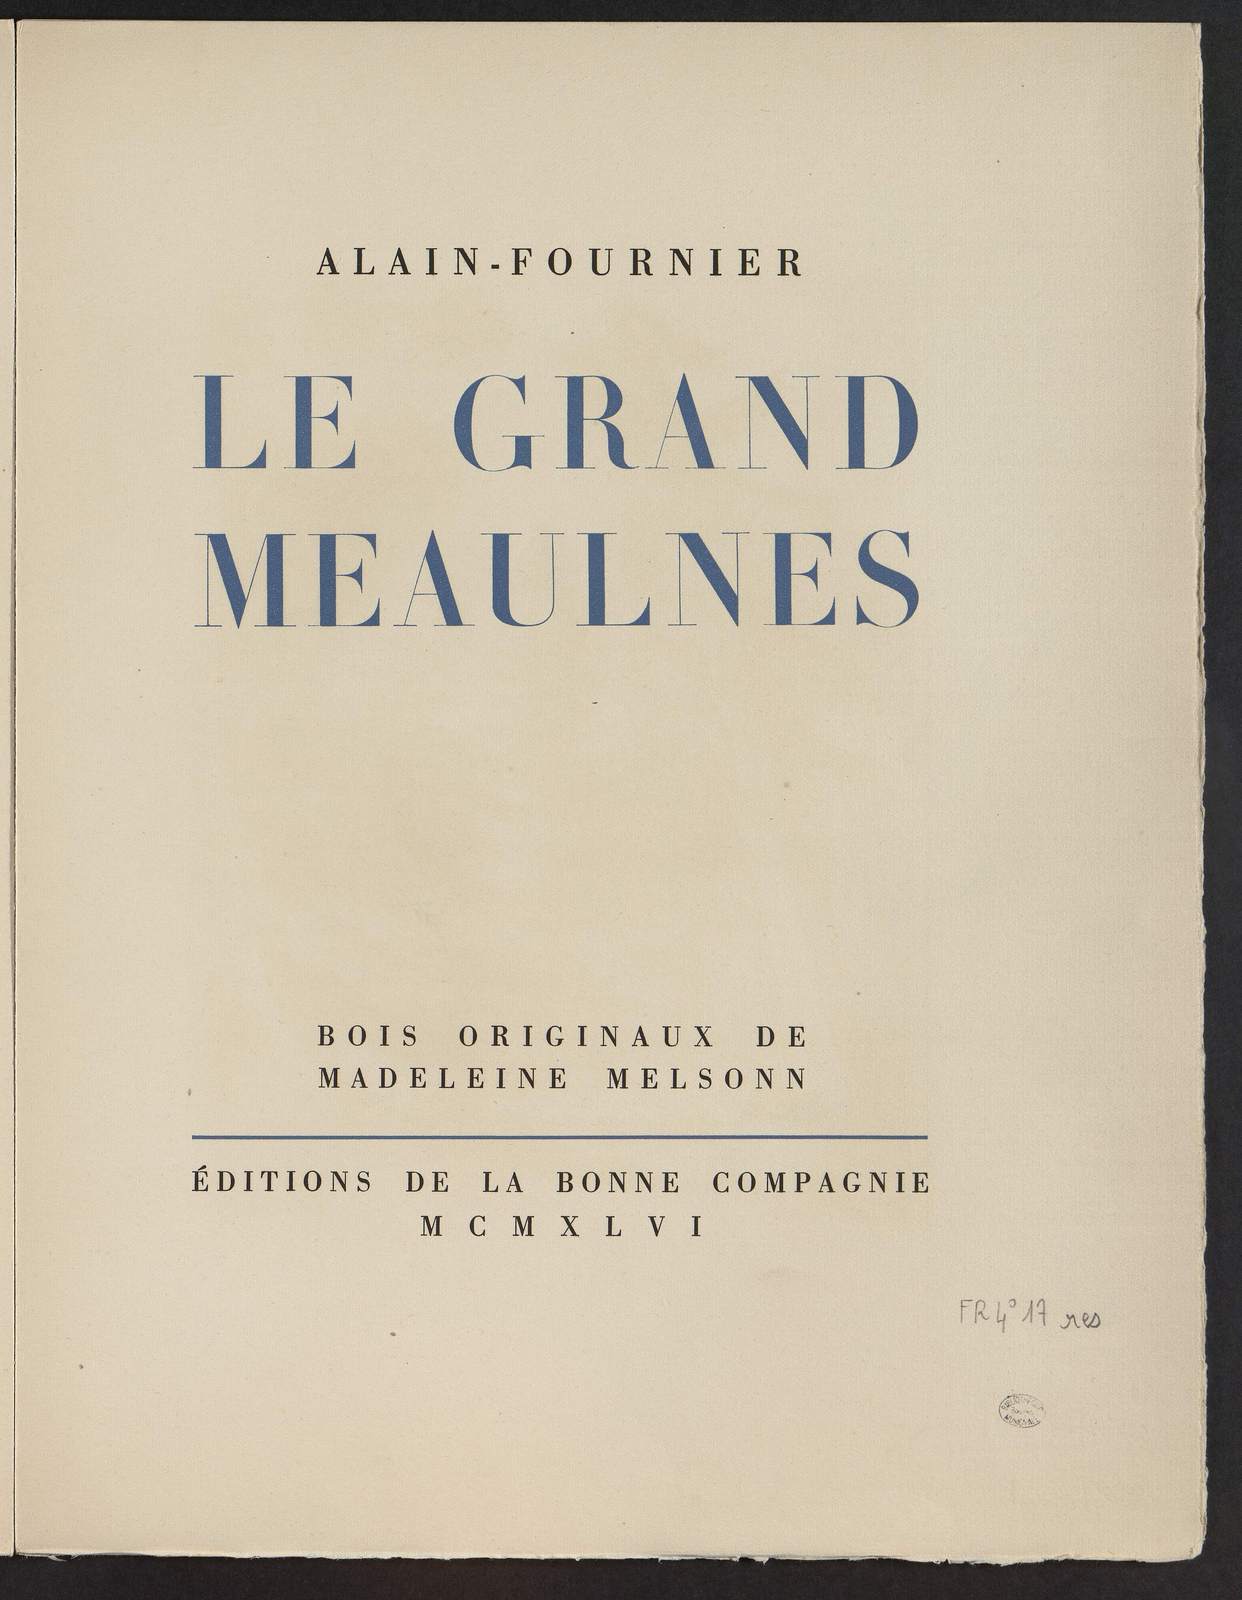 Le Grand Meaulnes, Le gilet de soie, illustré par Madeleine Melsonn, Editions de la Bonne Compagnie, 1946